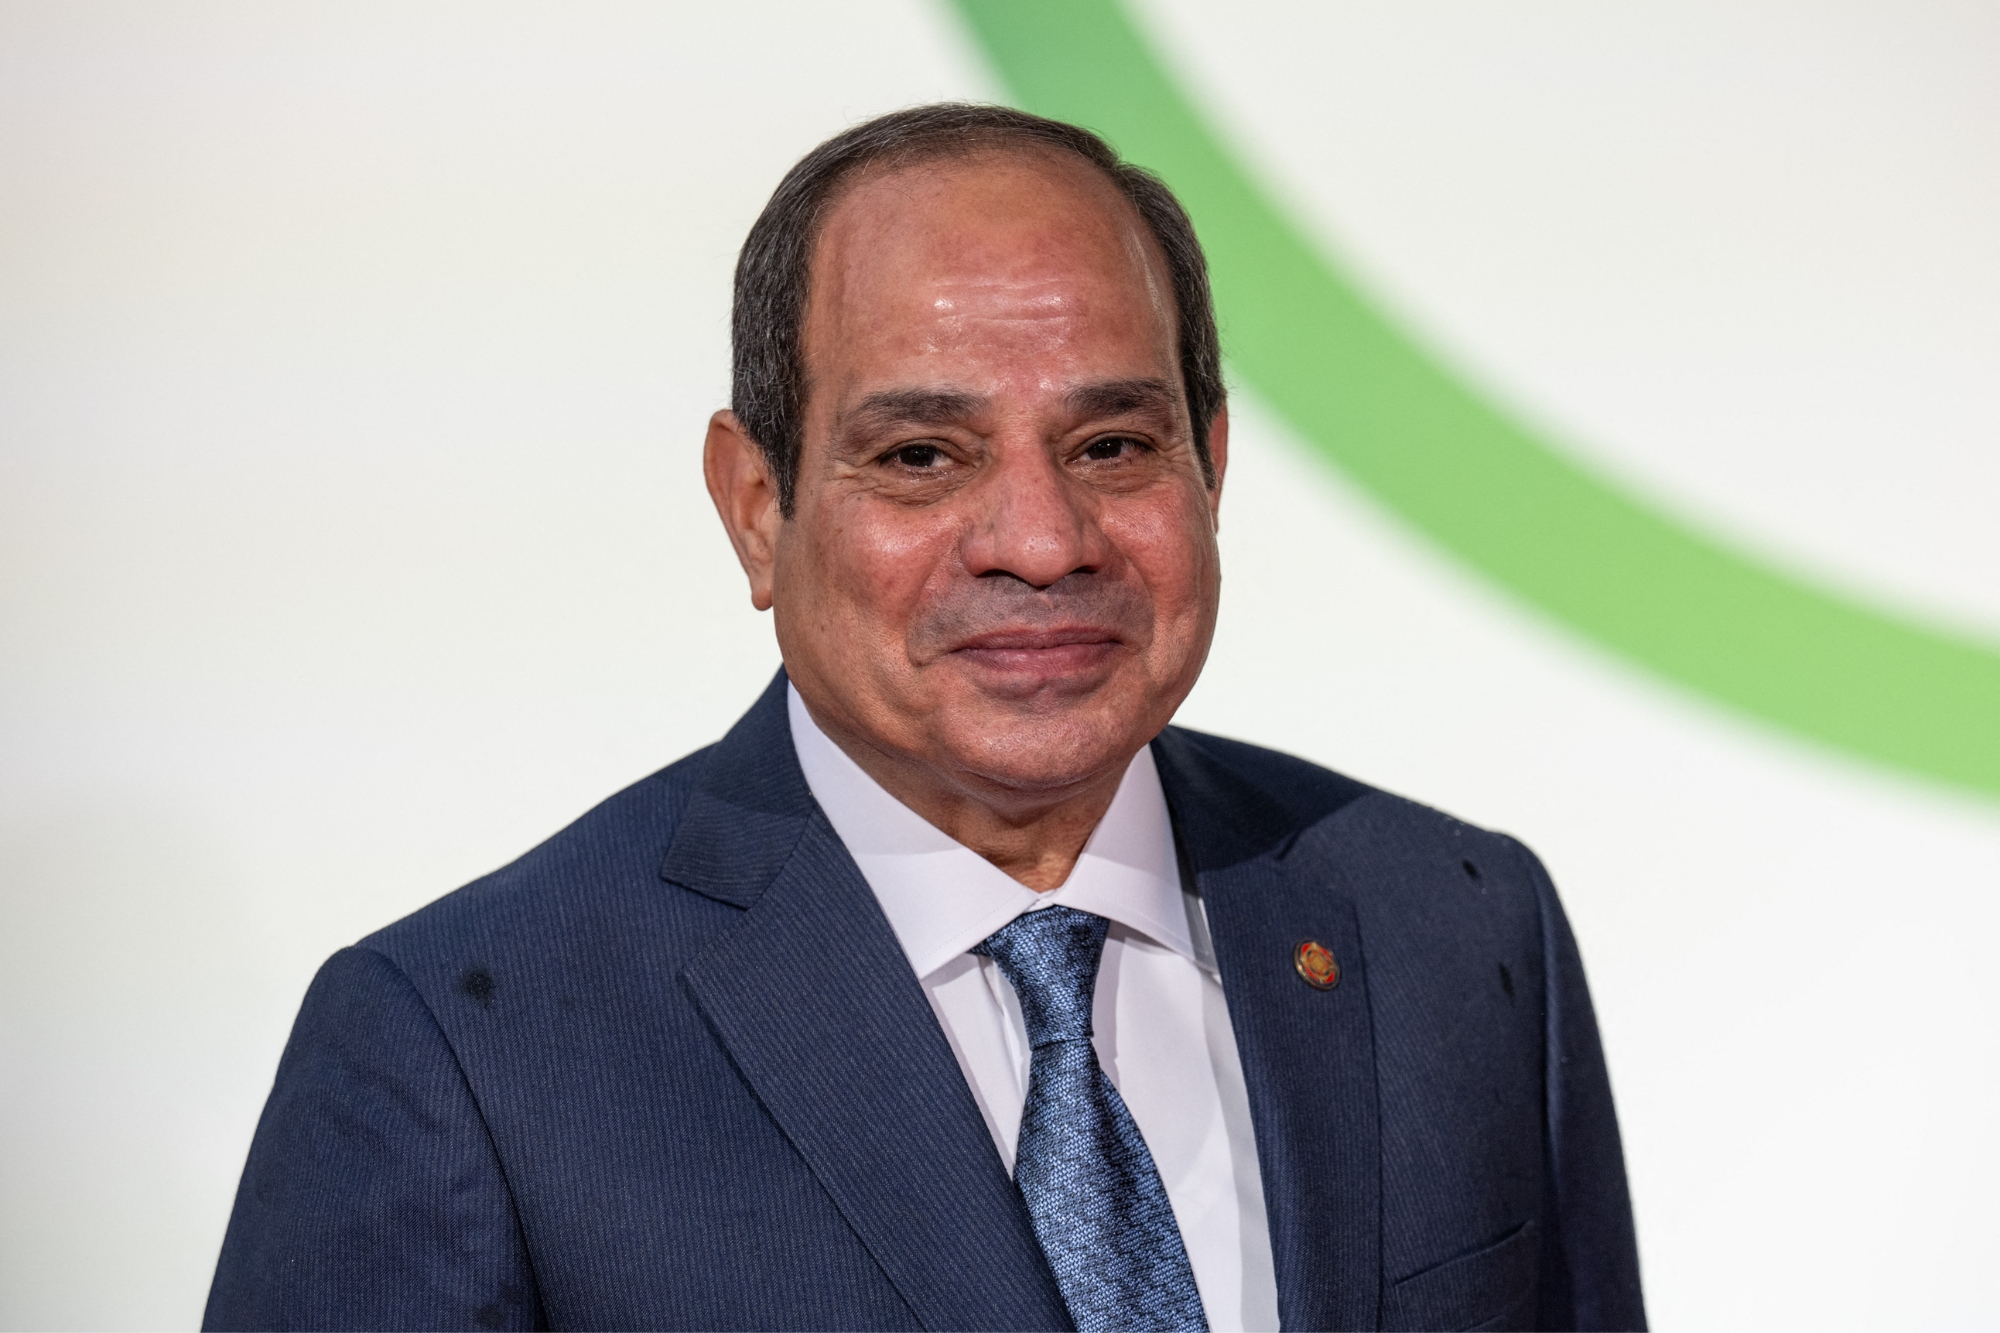 L’Egitto raggiunge i 105 milioni di abitanti, al-Sisi si affida al modello cinese